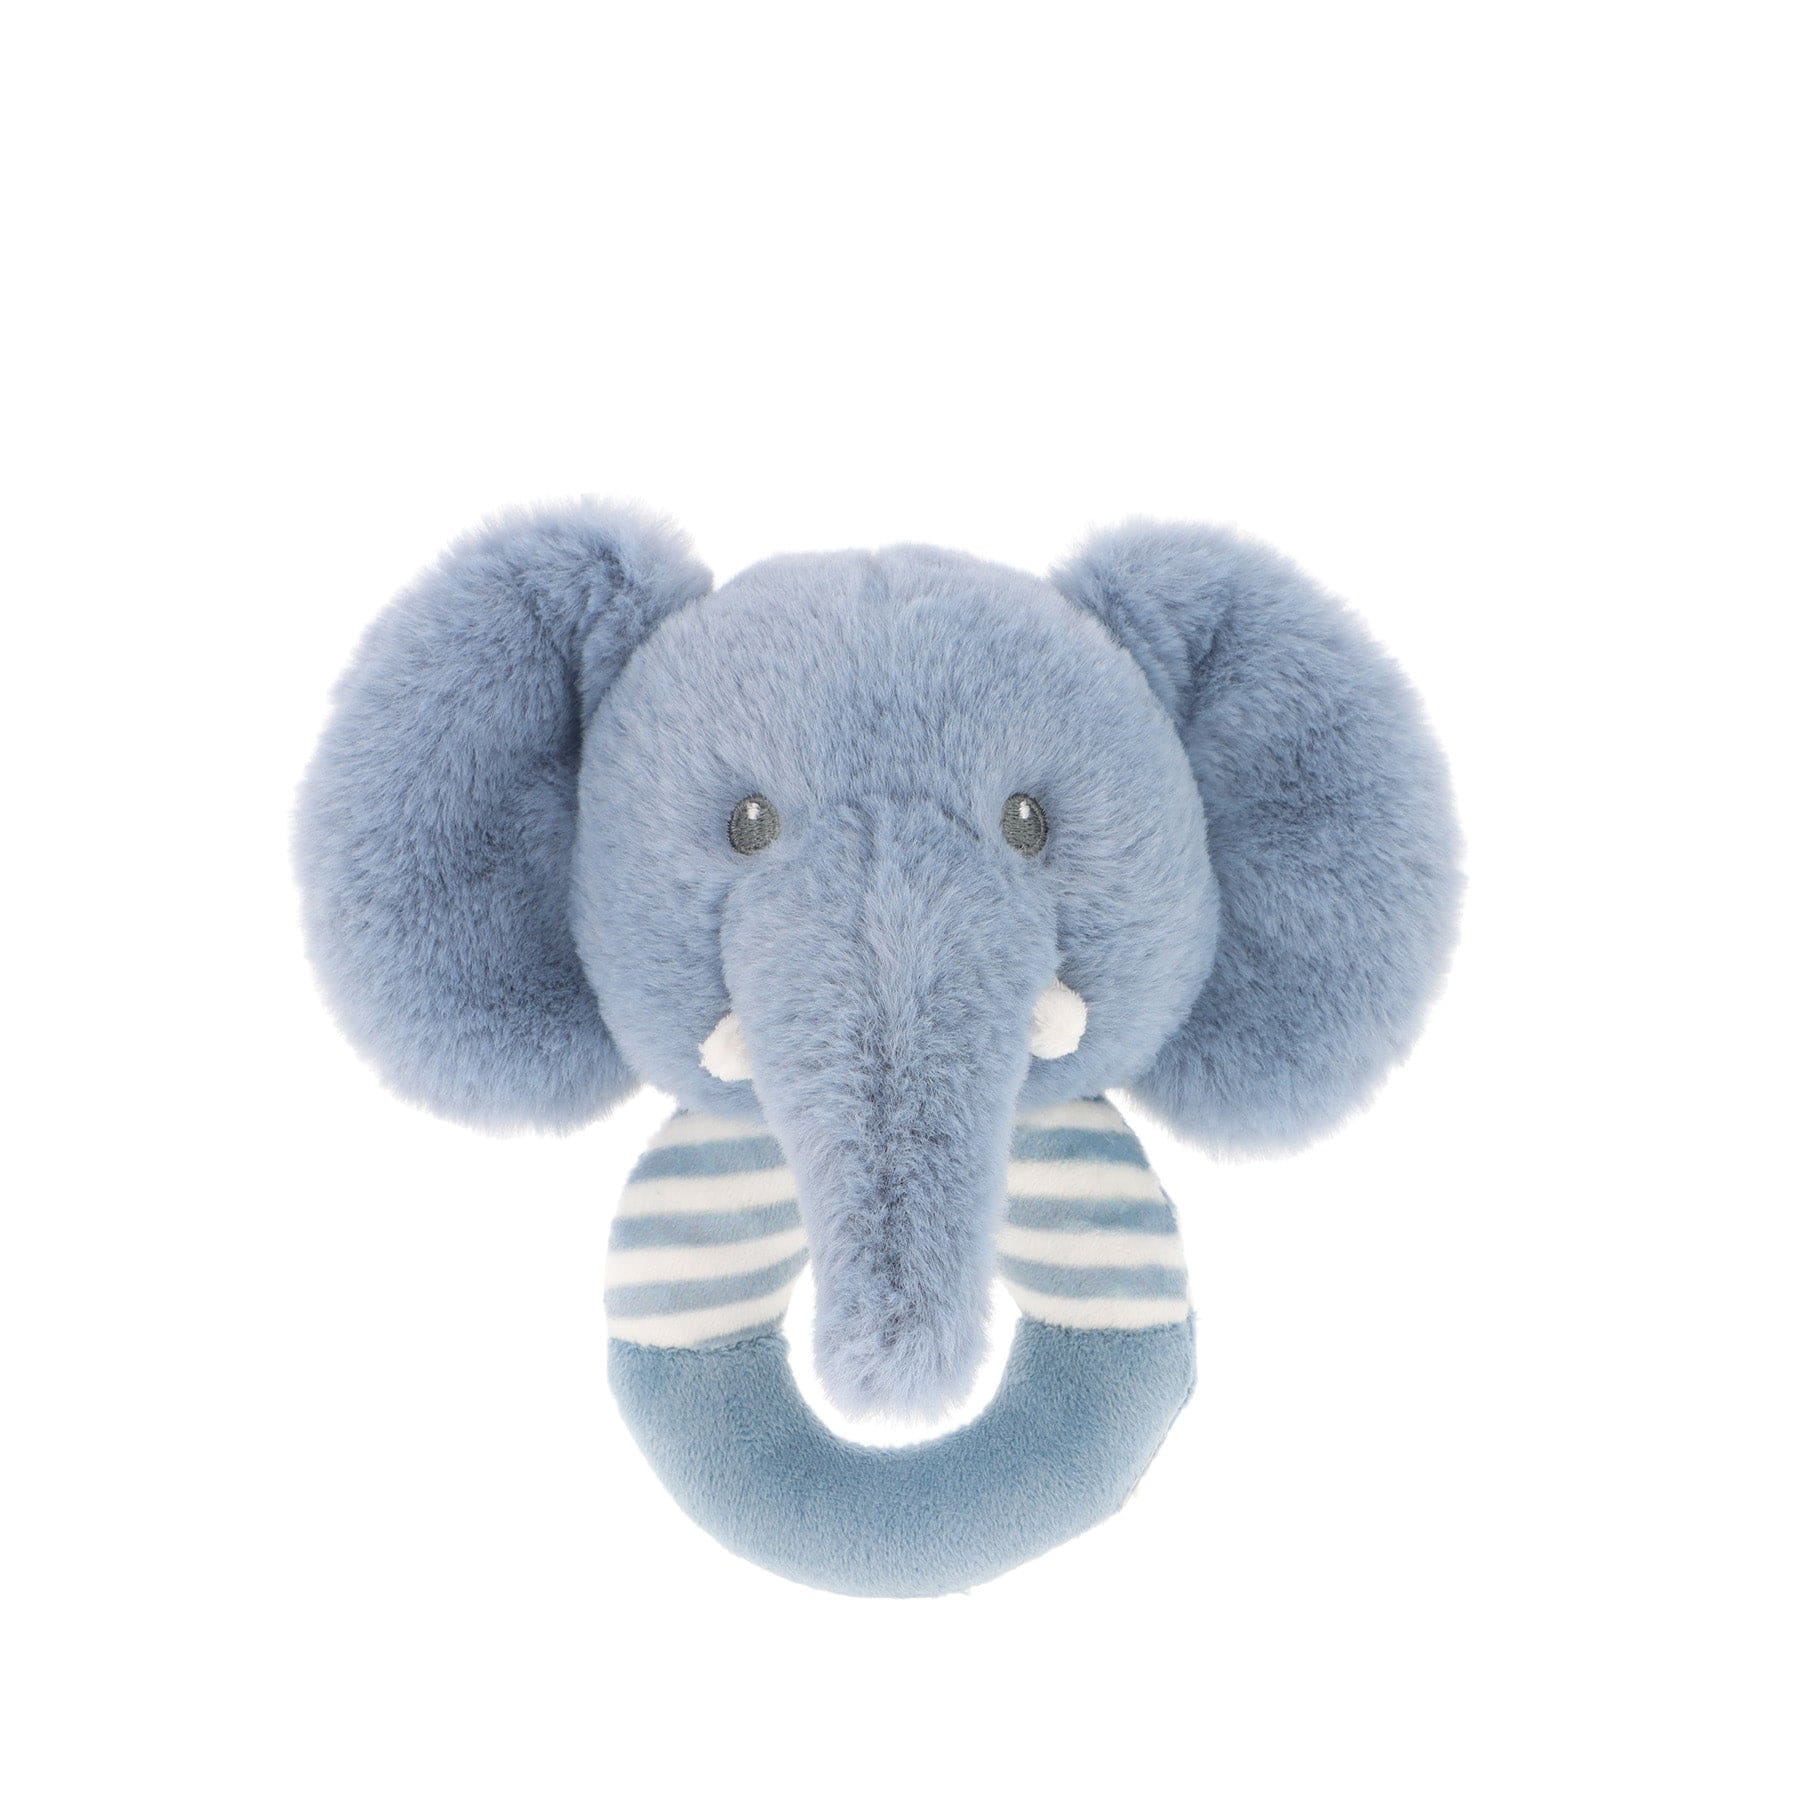 Keeleco ezra elephant ring rattle